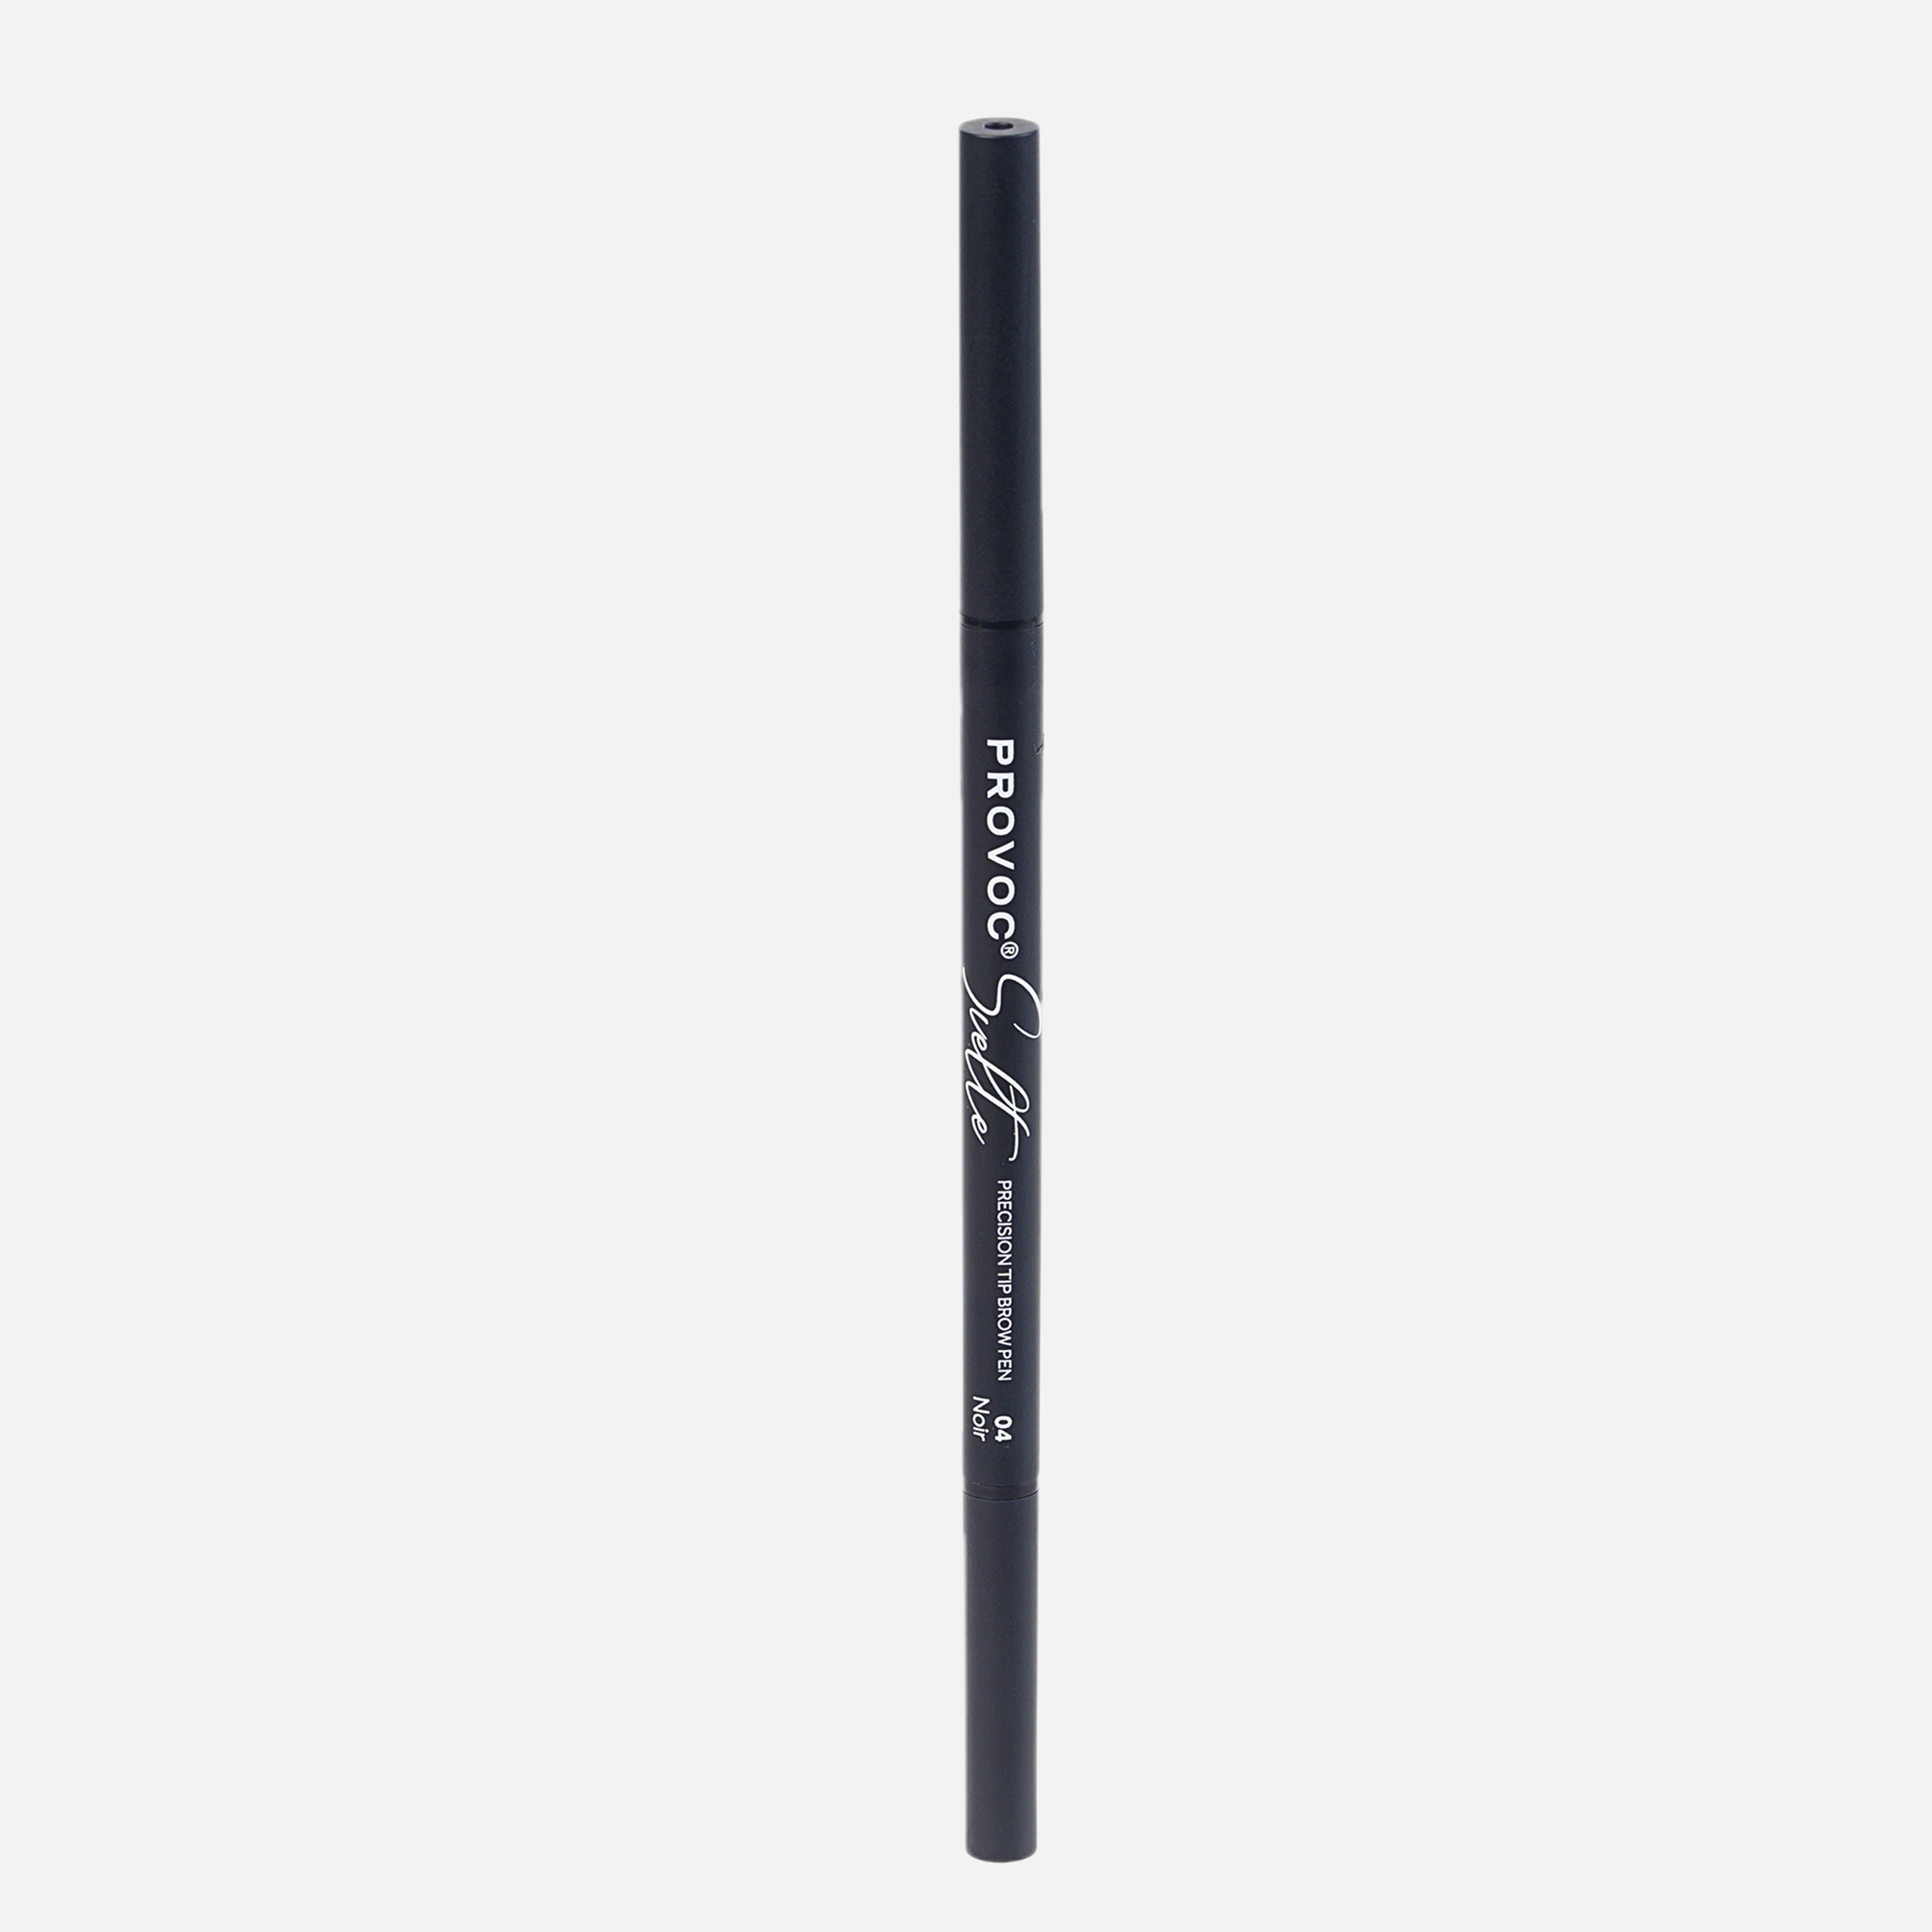 Ультратонкий карандаш для бровей Sawaya International LLC 04 брюнет ультратонкий карандаш для бровей sawaya international llc 04 брюнет